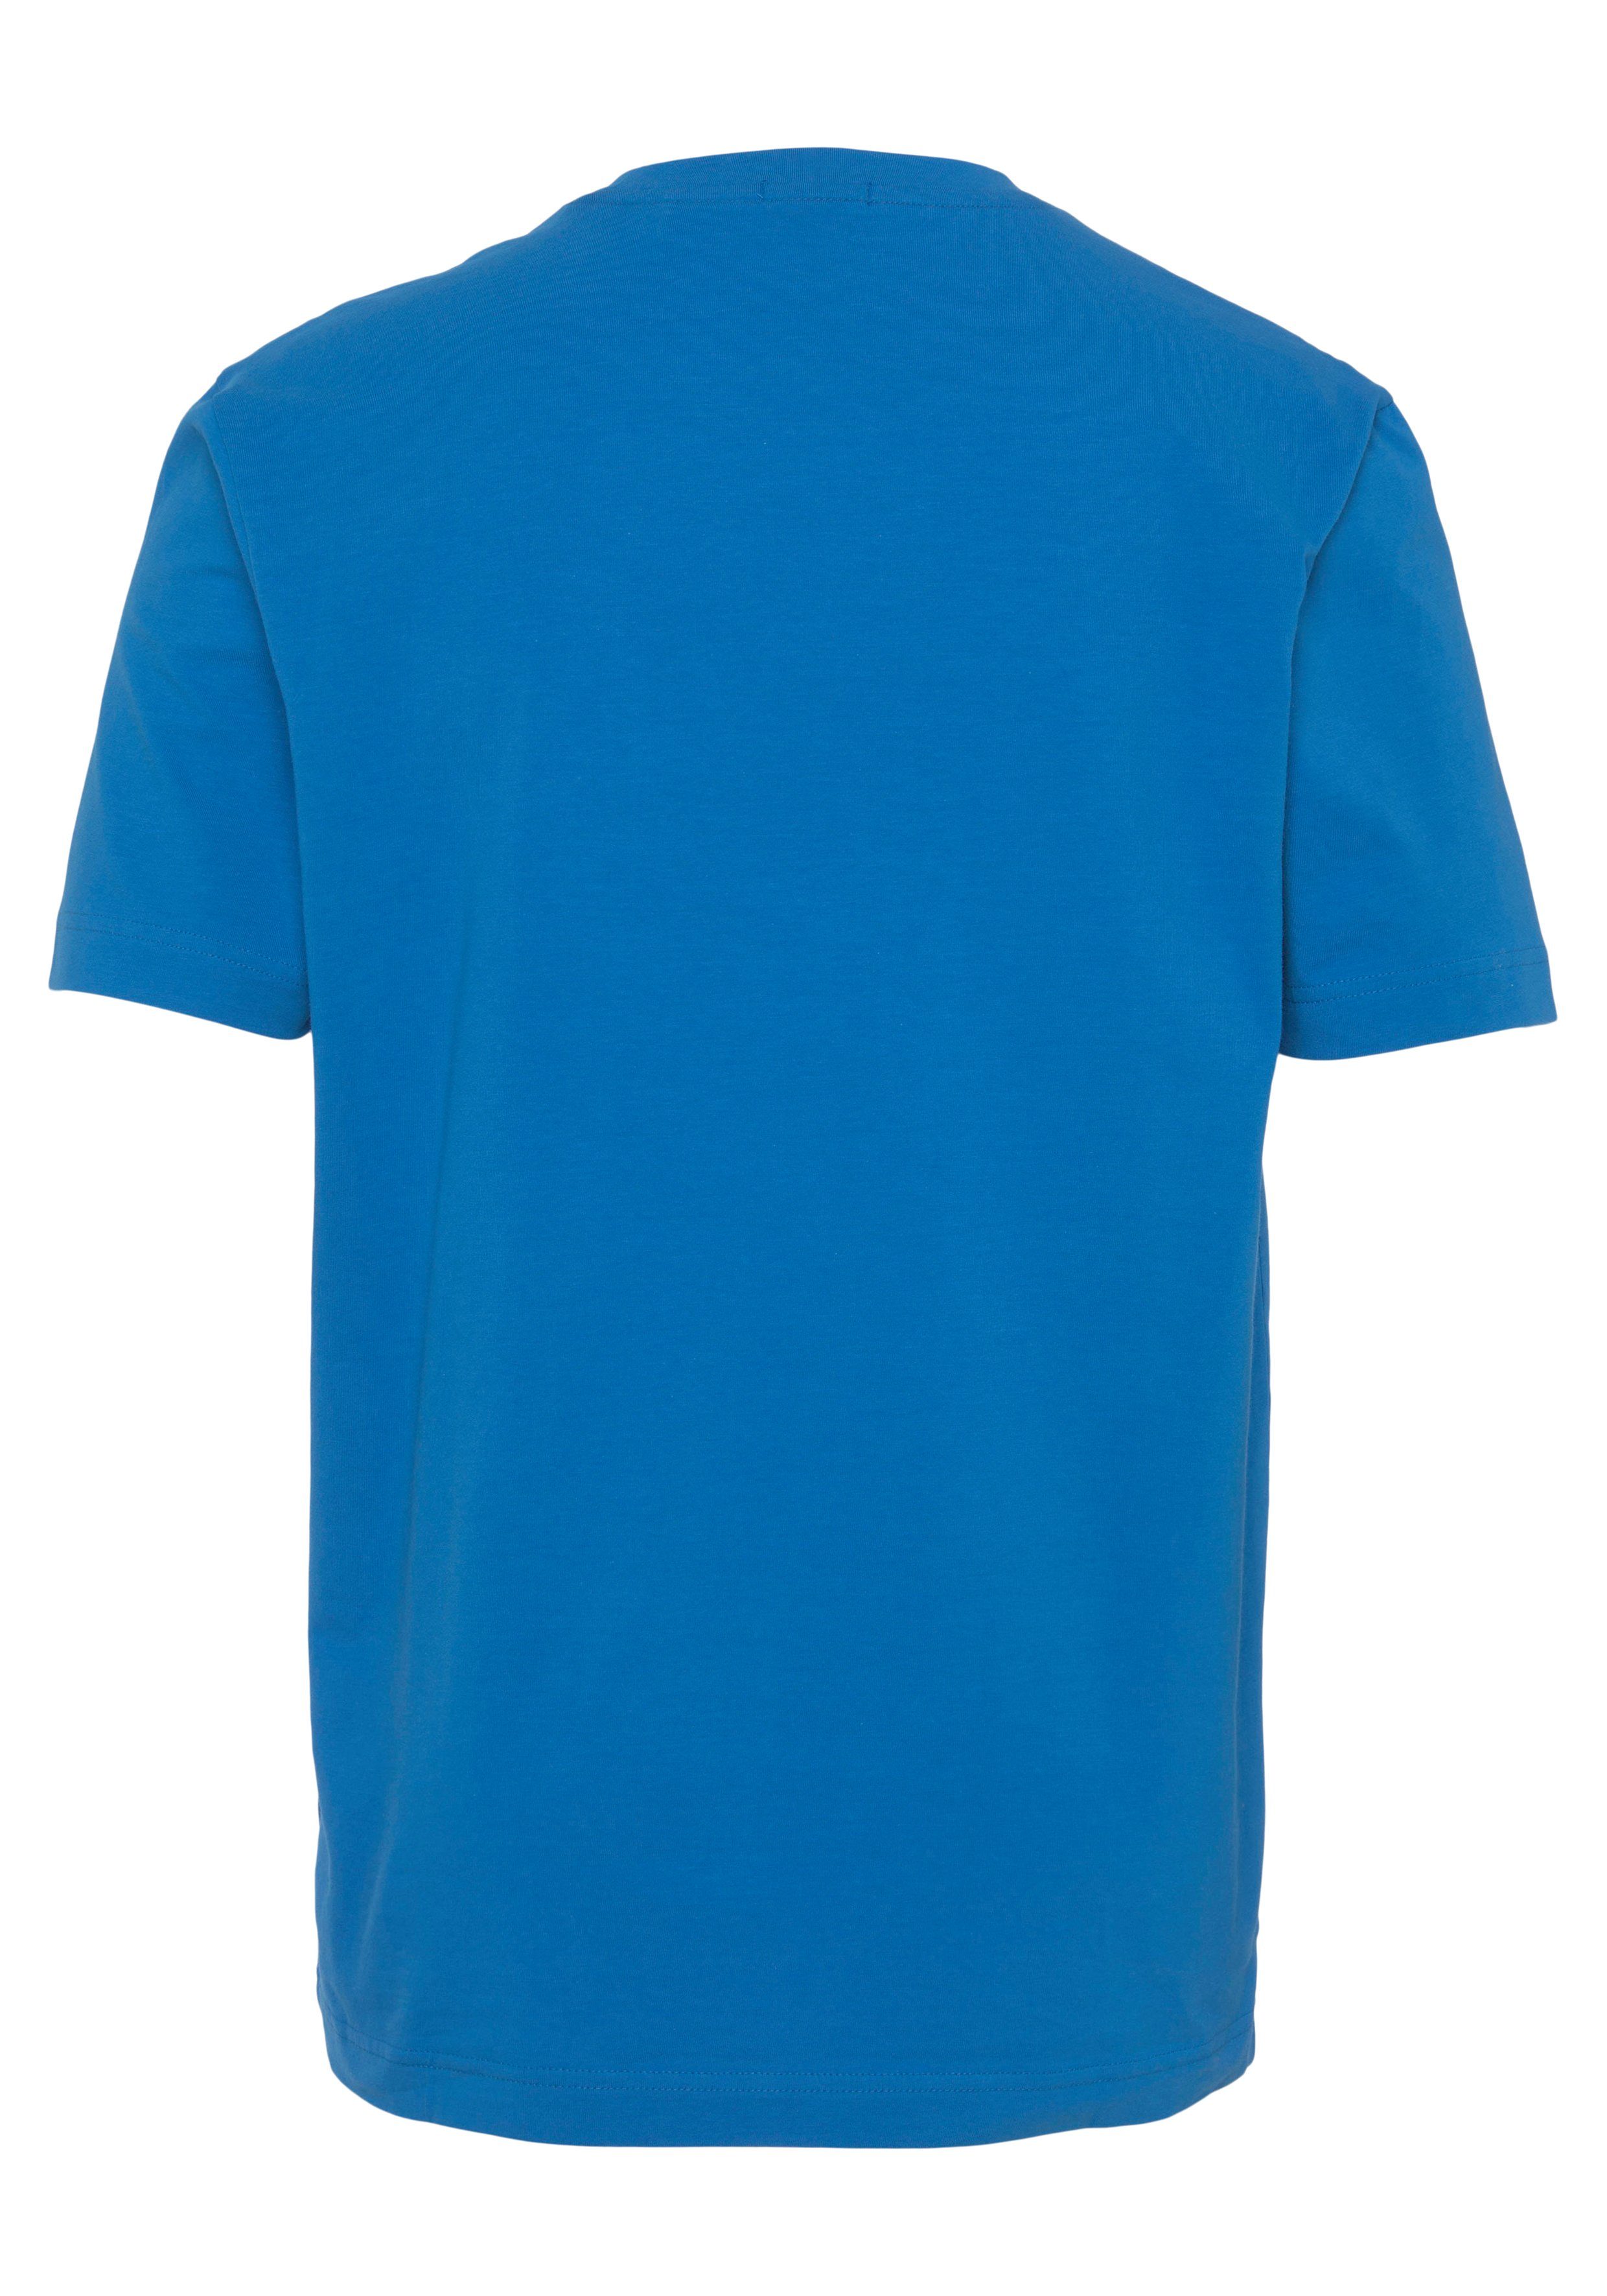 BOSS ORANGE Kurzarmshirt TChup open Brust auf der blue mit BOSS-Logodruck